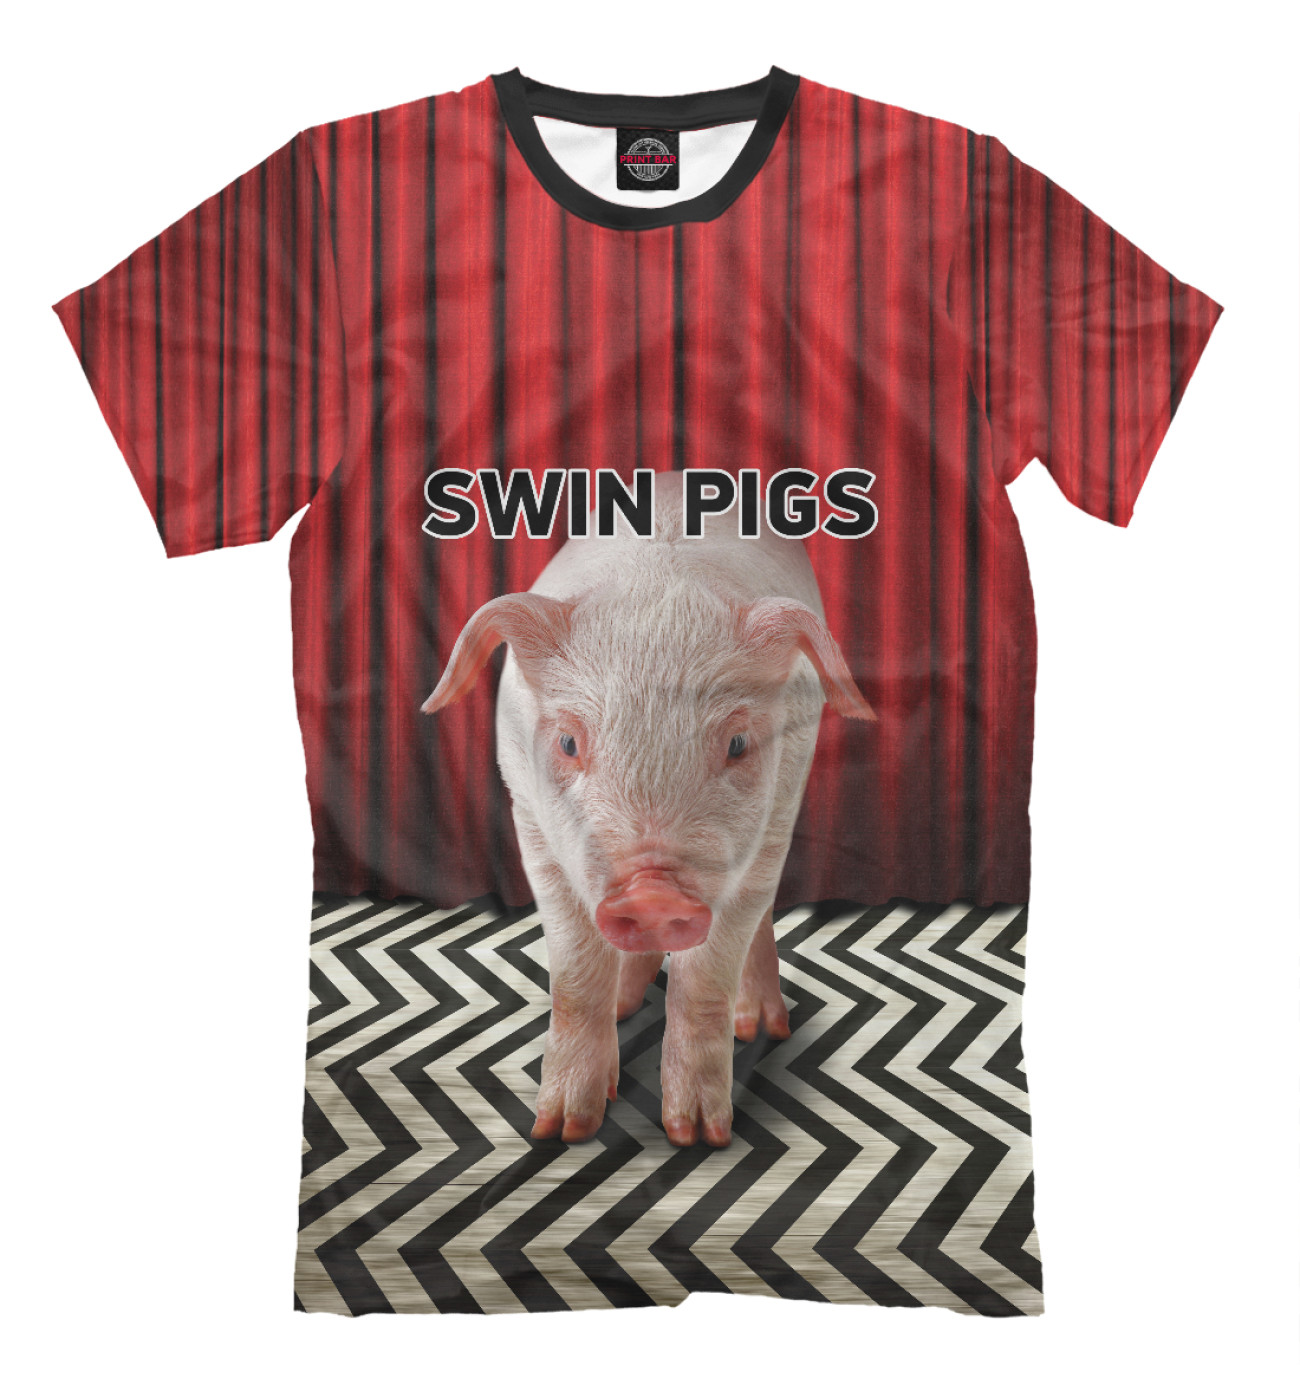 Мужская Футболка Swin Pigs, артикул: PIG-180229-fut-2